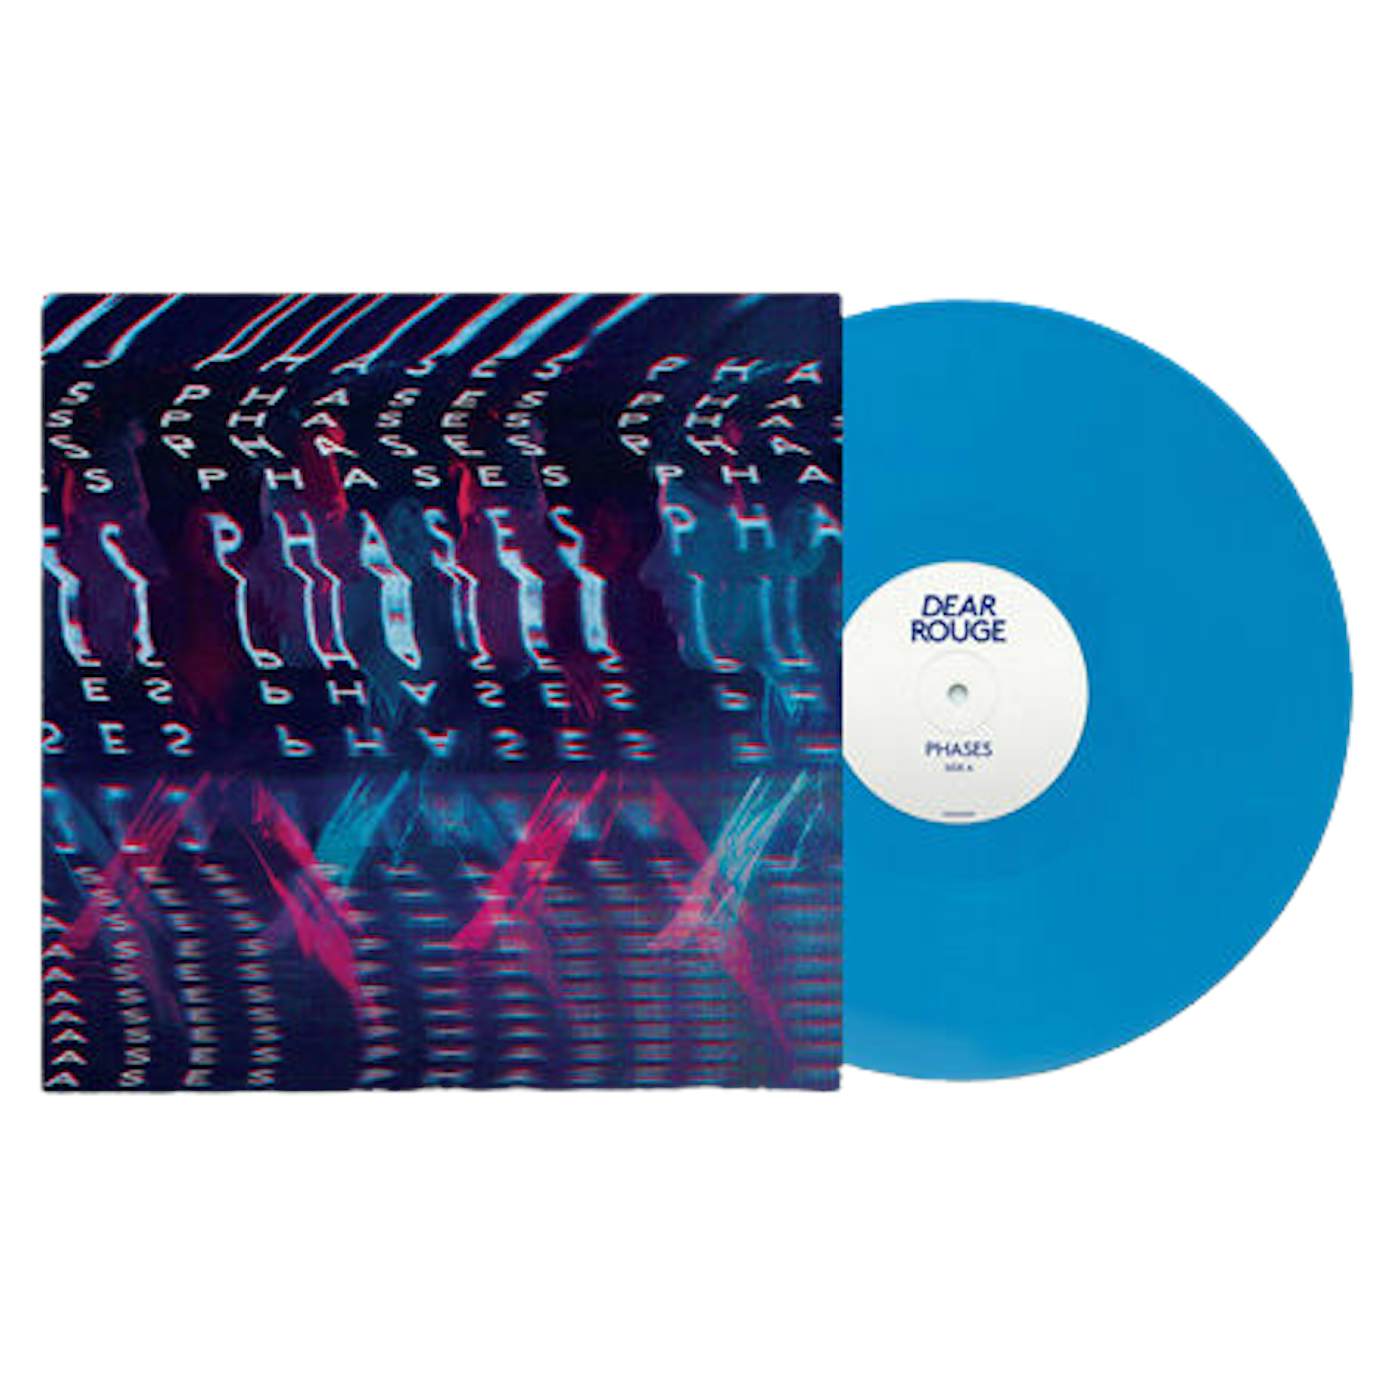 Dear Rouge Phases Blue LP (Vinyl)